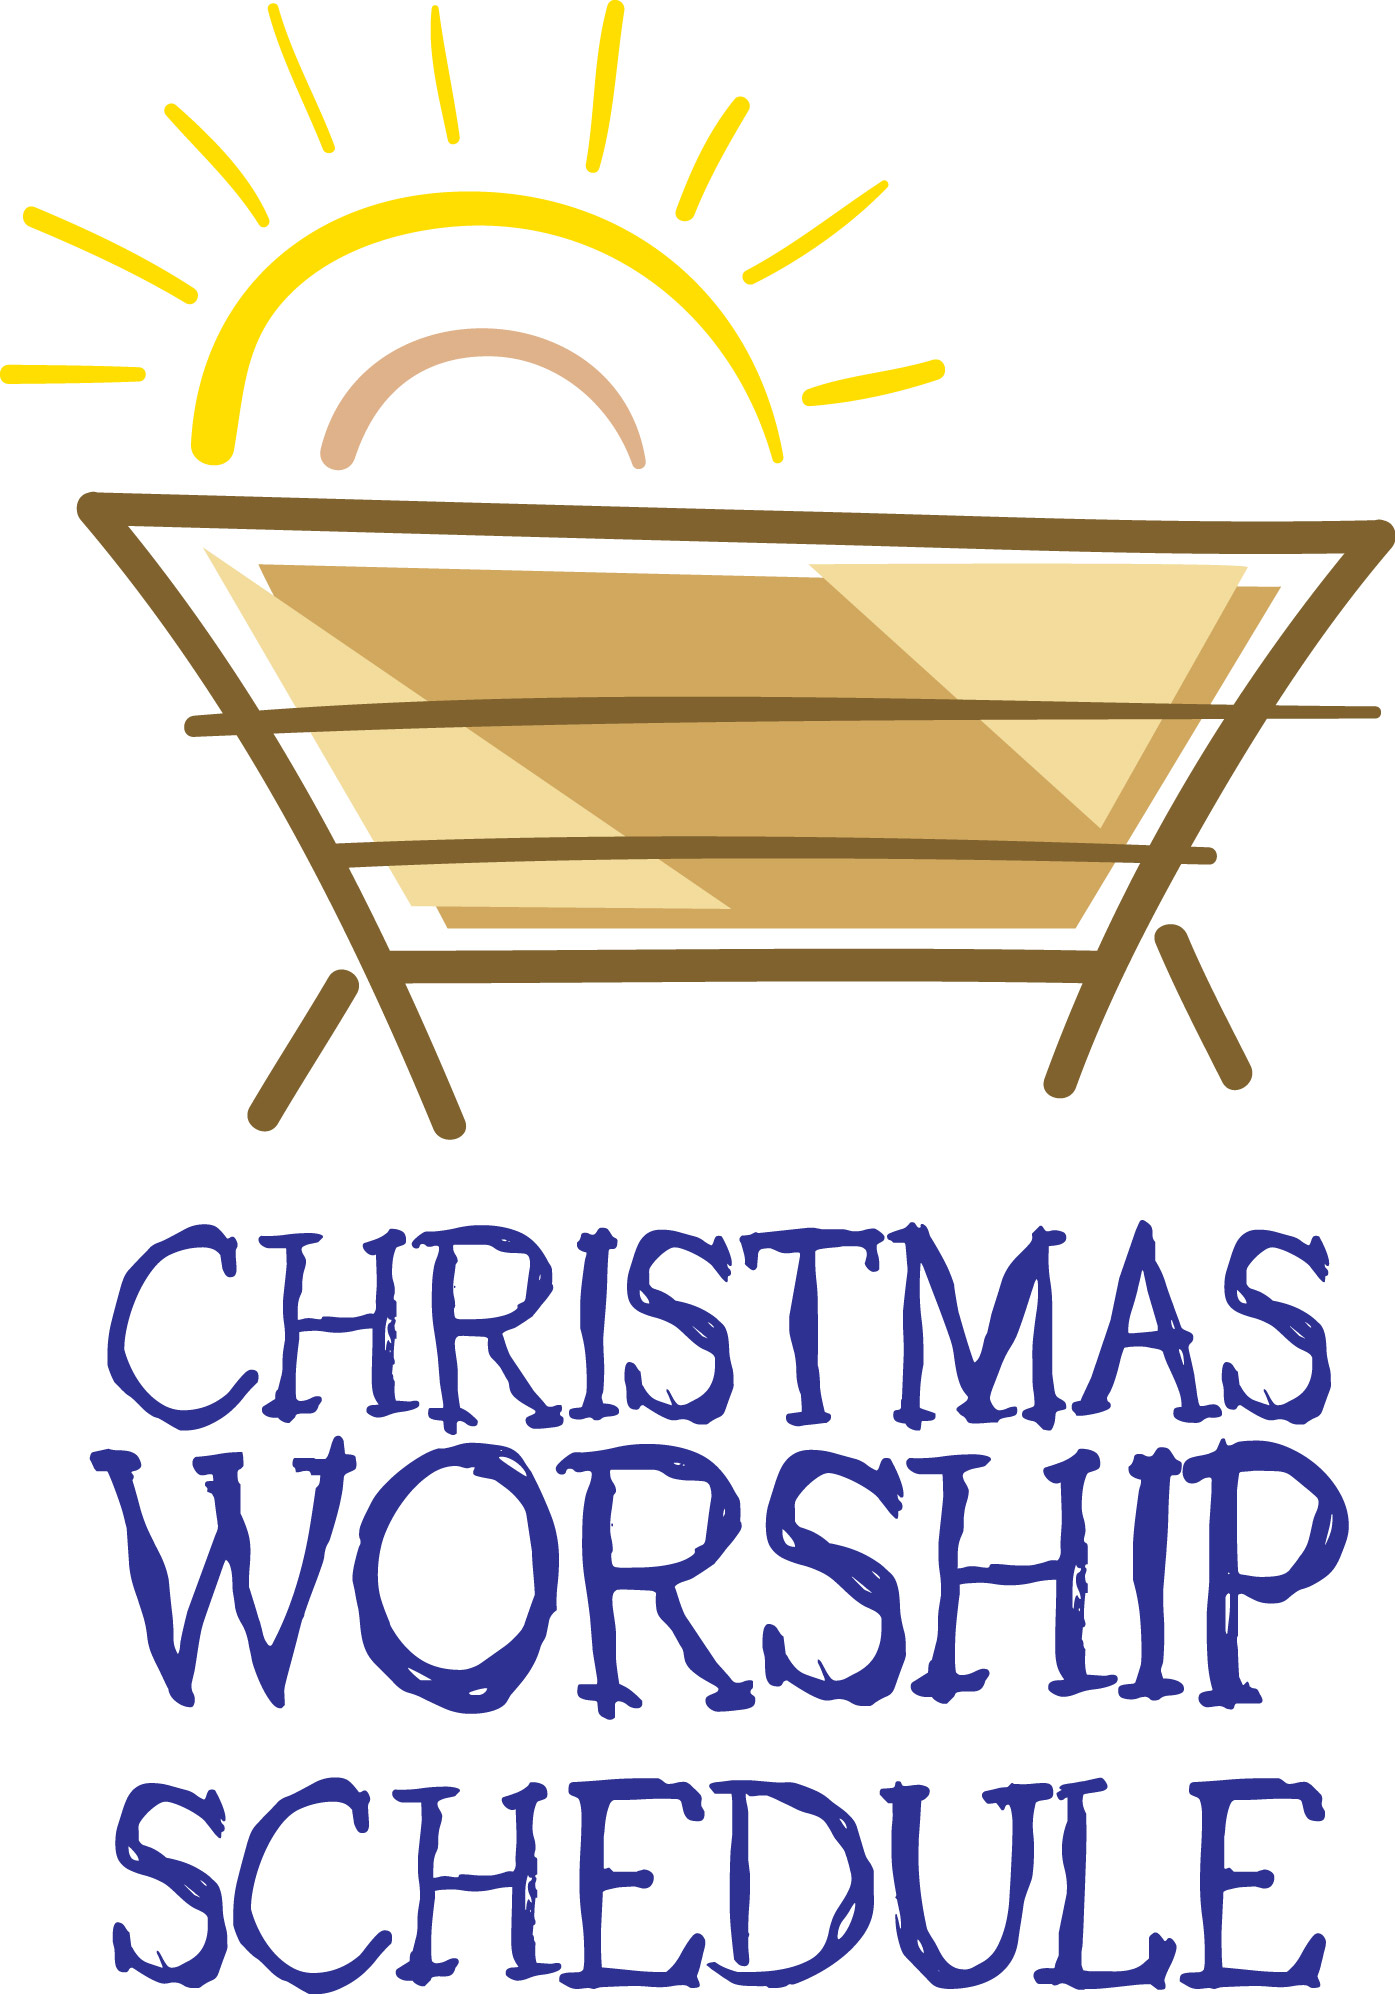 xmas worship schedule « Wallace Presbyterian Church